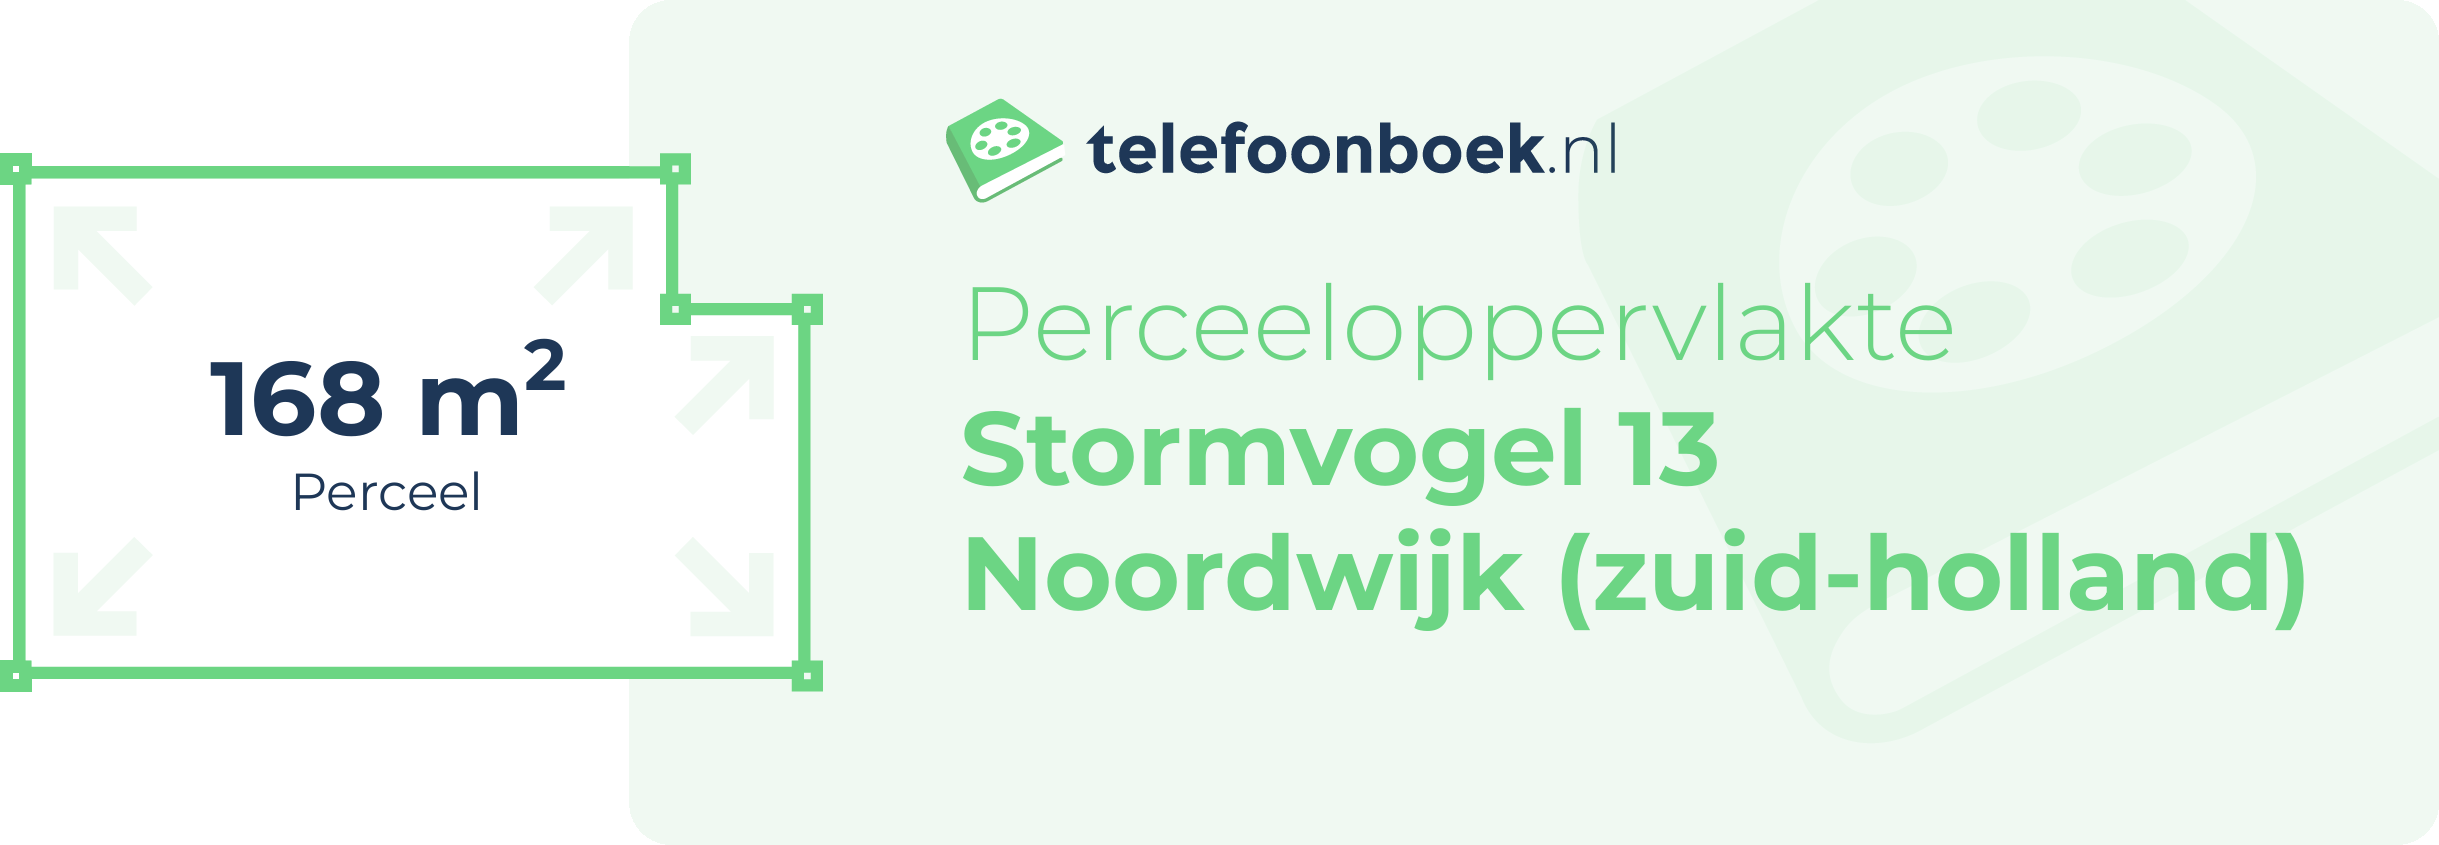 Perceeloppervlakte Stormvogel 13 Noordwijk (Zuid-Holland)